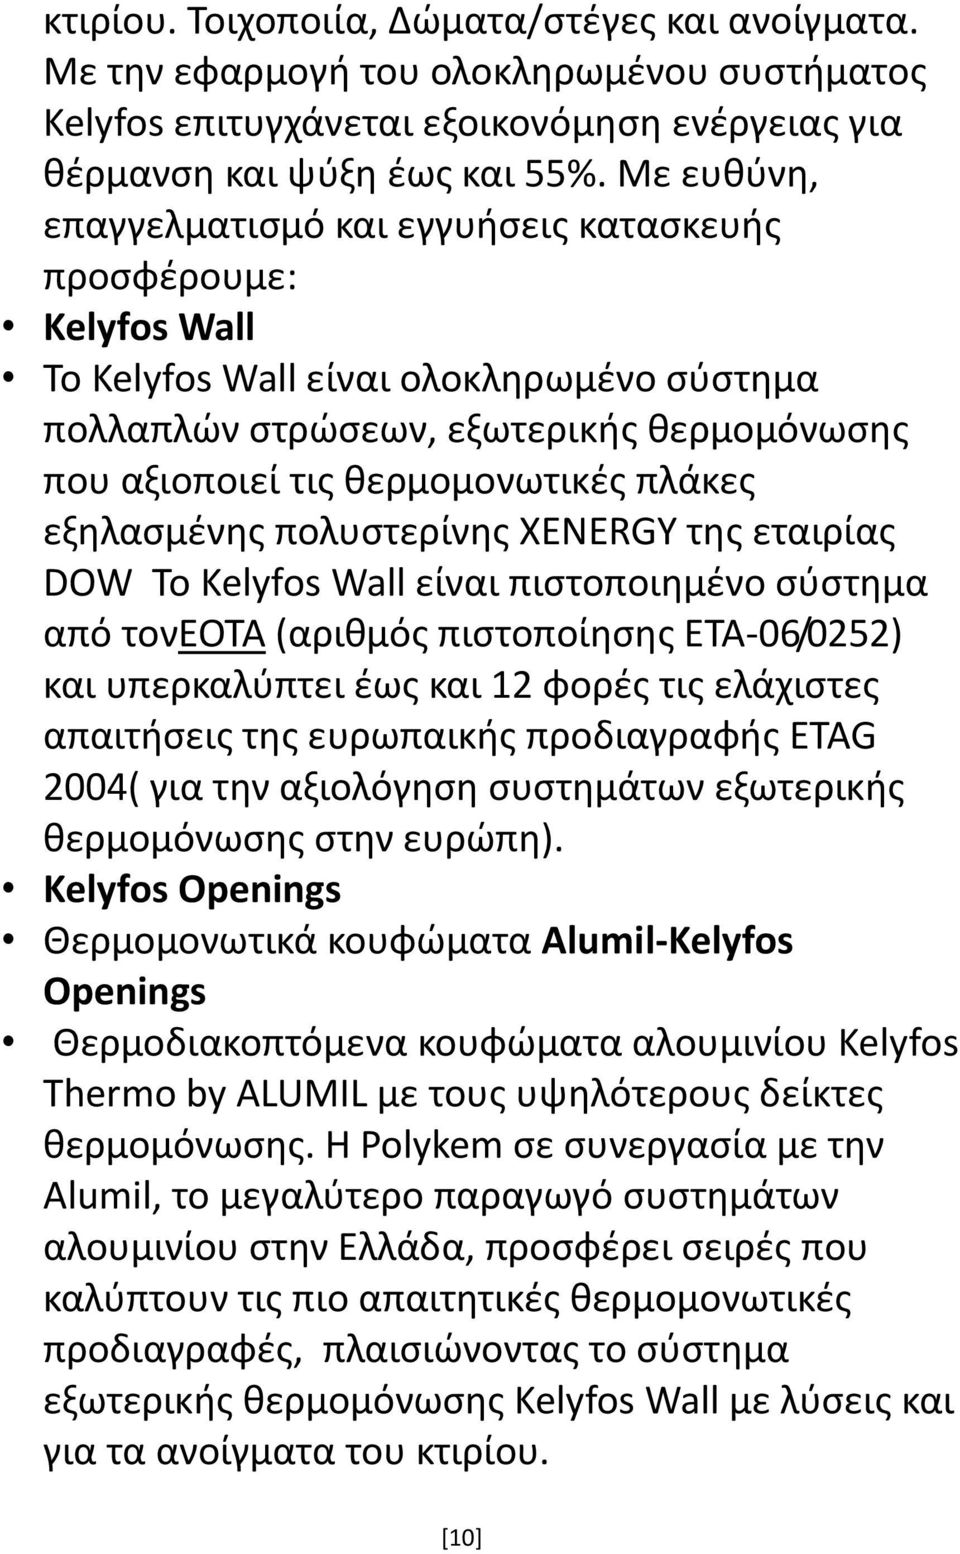 πλάκες εξηλασμένης πολυστερίνης XENERGY της εταιρίας DOW Το Kelyfos Wall είναι πιστοποιημένο σύστημα από τονεοτα (αριθμός πιστοποίησης ΕΤΑ-06/0252) και υπερκαλύπτει έως και 12 φορές τις ελάχιστες